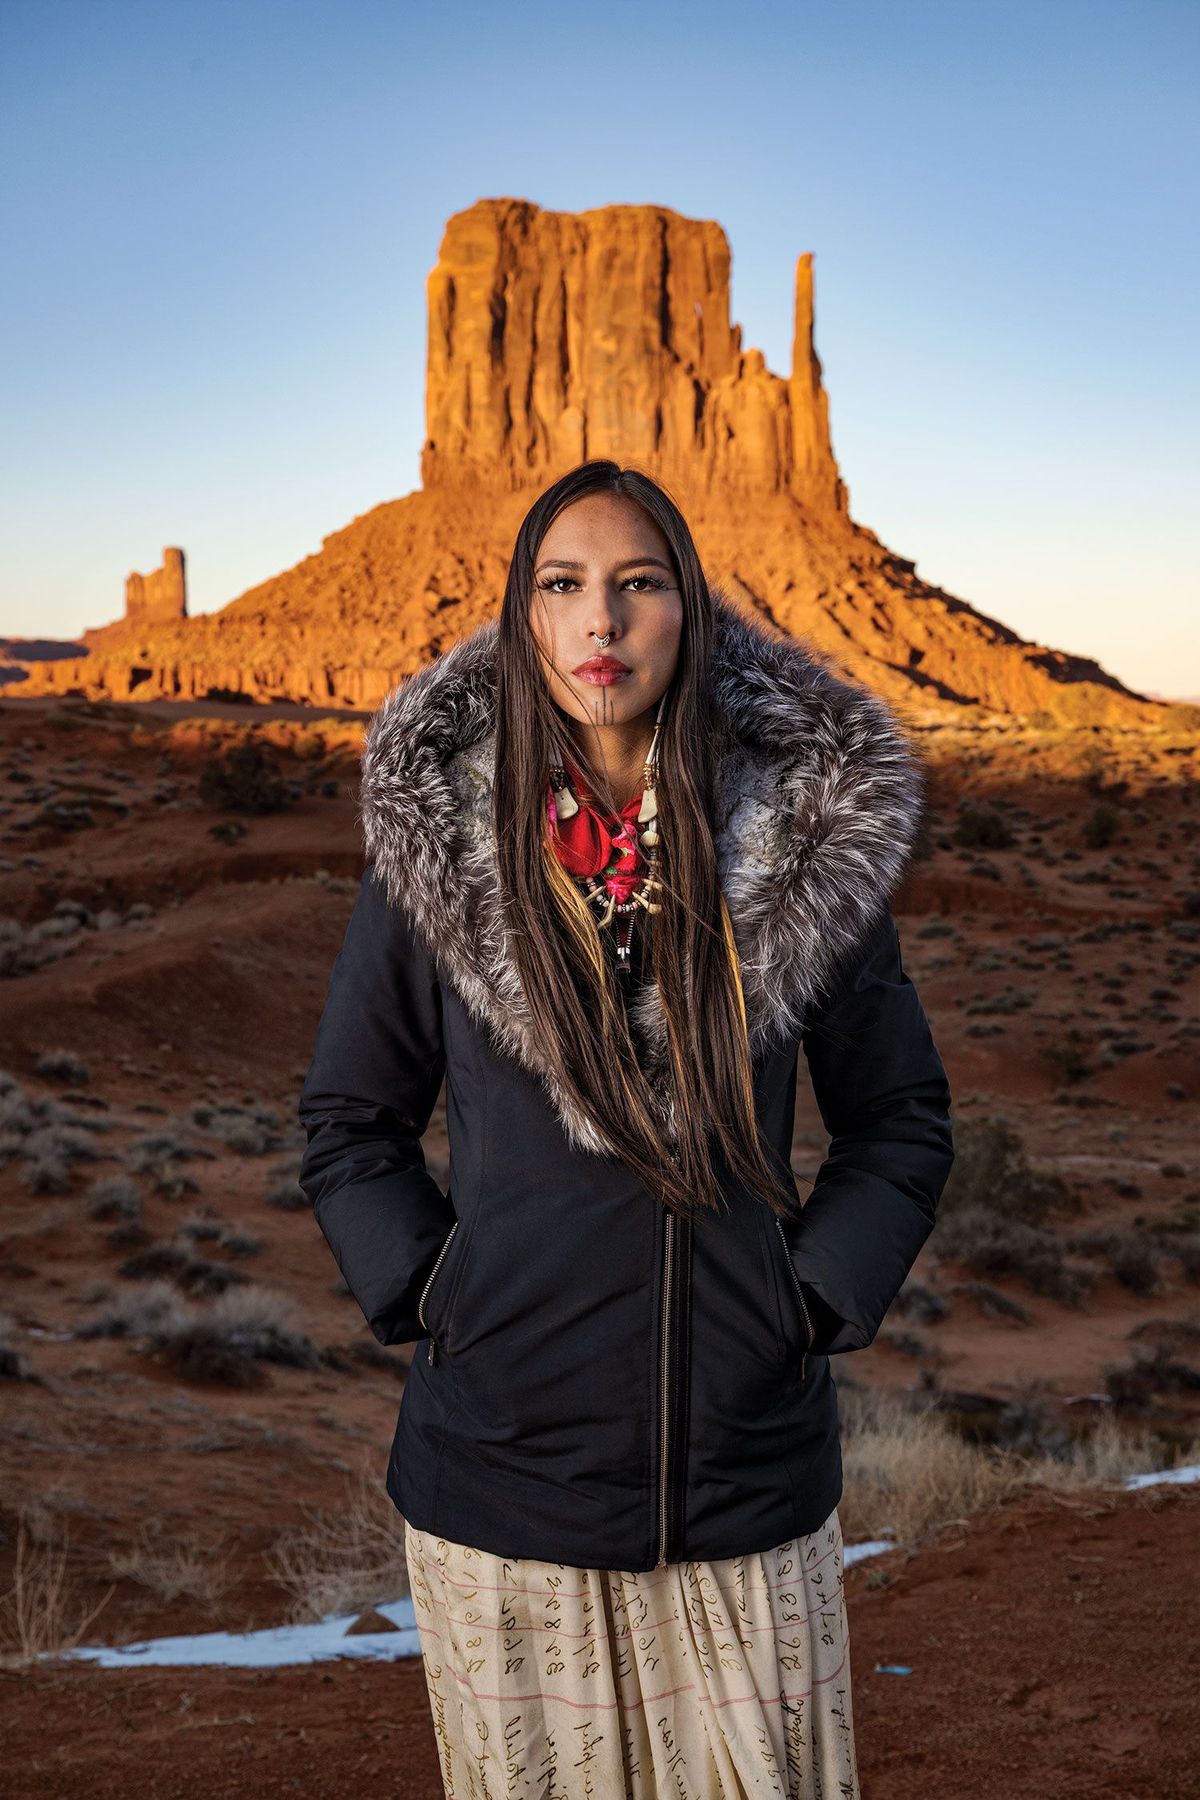 Het inheemse fotomodel Quannah Rose Chasinghorse gebruikt haar bekendheid om mensen duidelijk te maken van wie het land is waar ze leven Inheemse autonomie zegt ze is noodzakelijk om mijn manier van leven te beschermen Chasinghorse werd geboren in het gebied van de Din Navajo in Arizona Op de foto staat ze in TseBiiNdzisgaii Monument Valley een park dat door de Din wordt beheerd